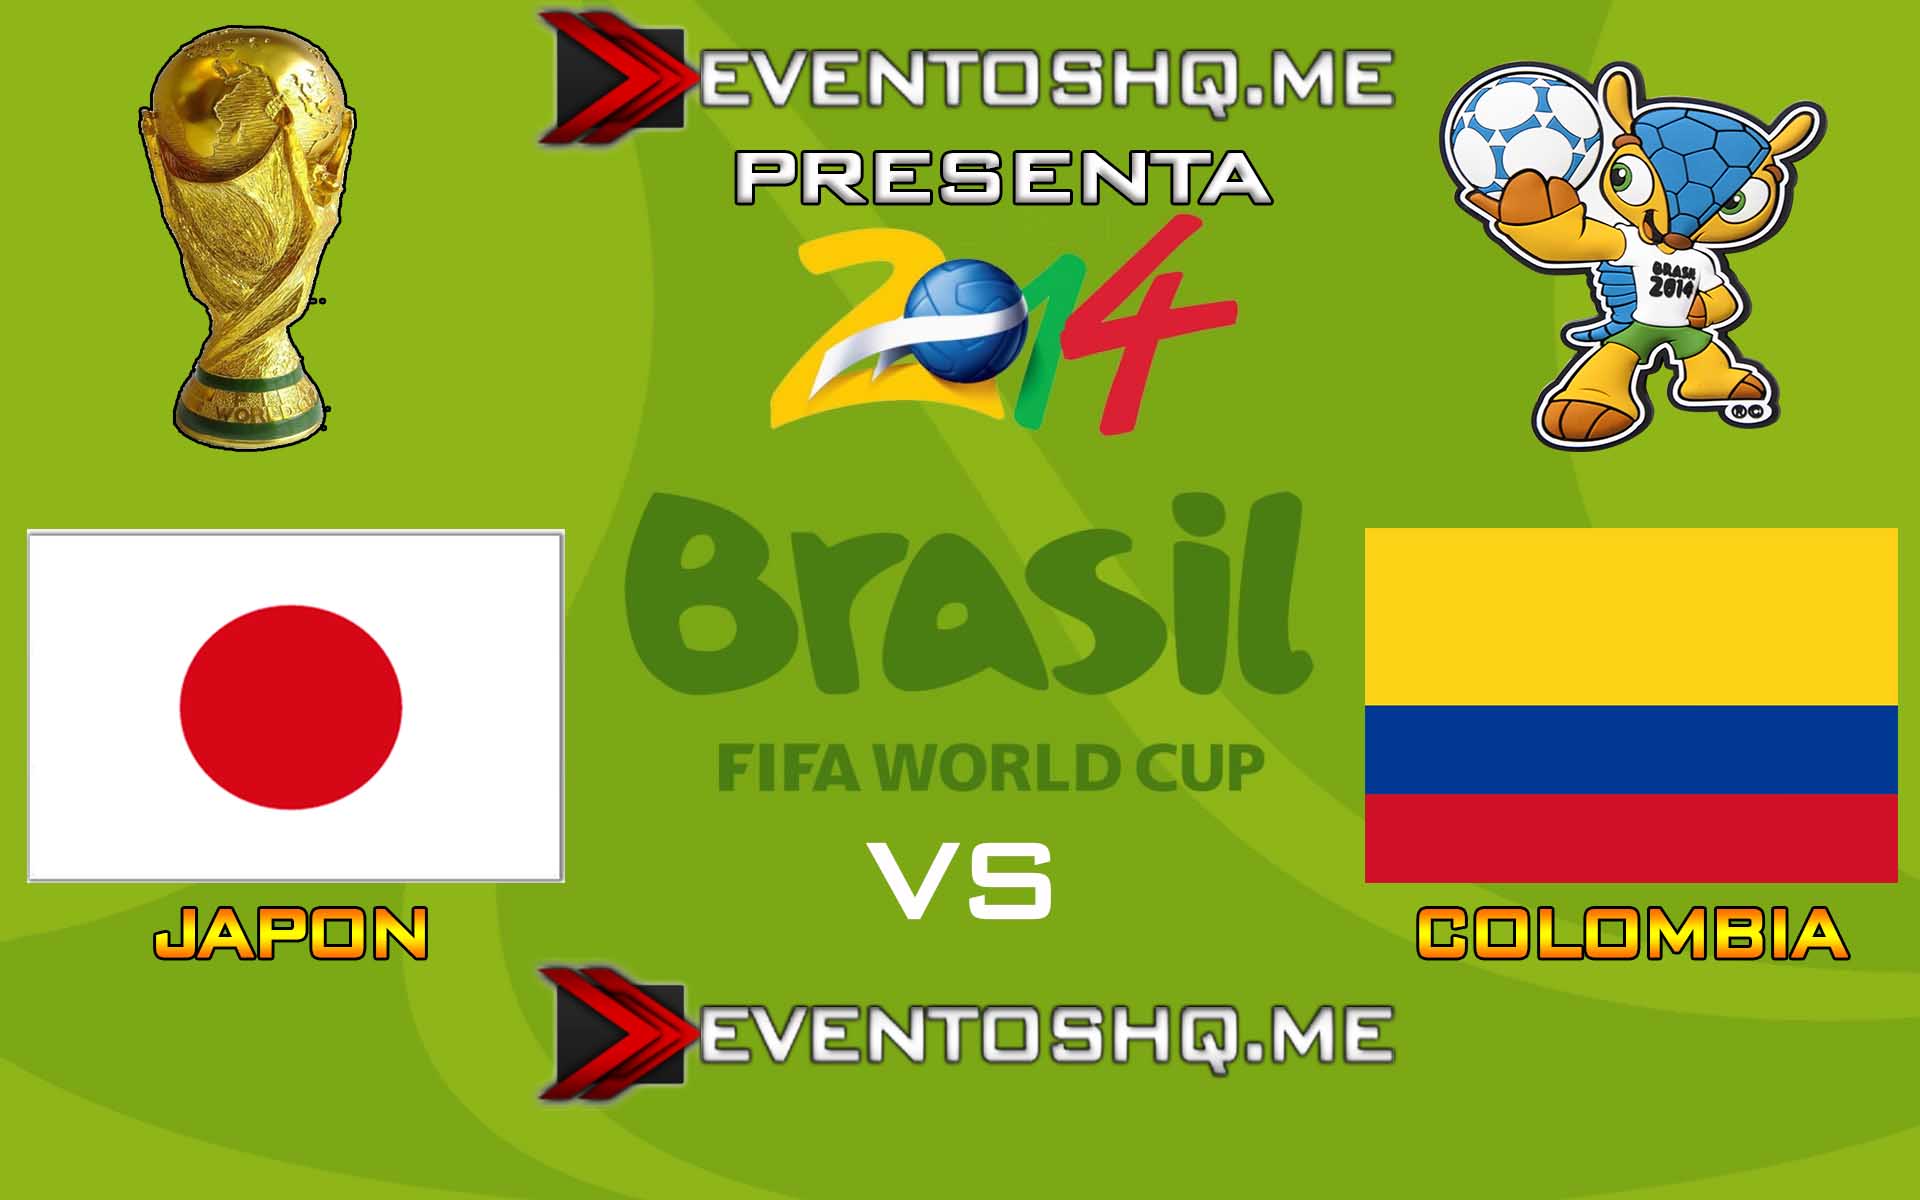 Ver en Vivo Japon vs Colombia Mundial Brasil 2014 www.eventoshq.me